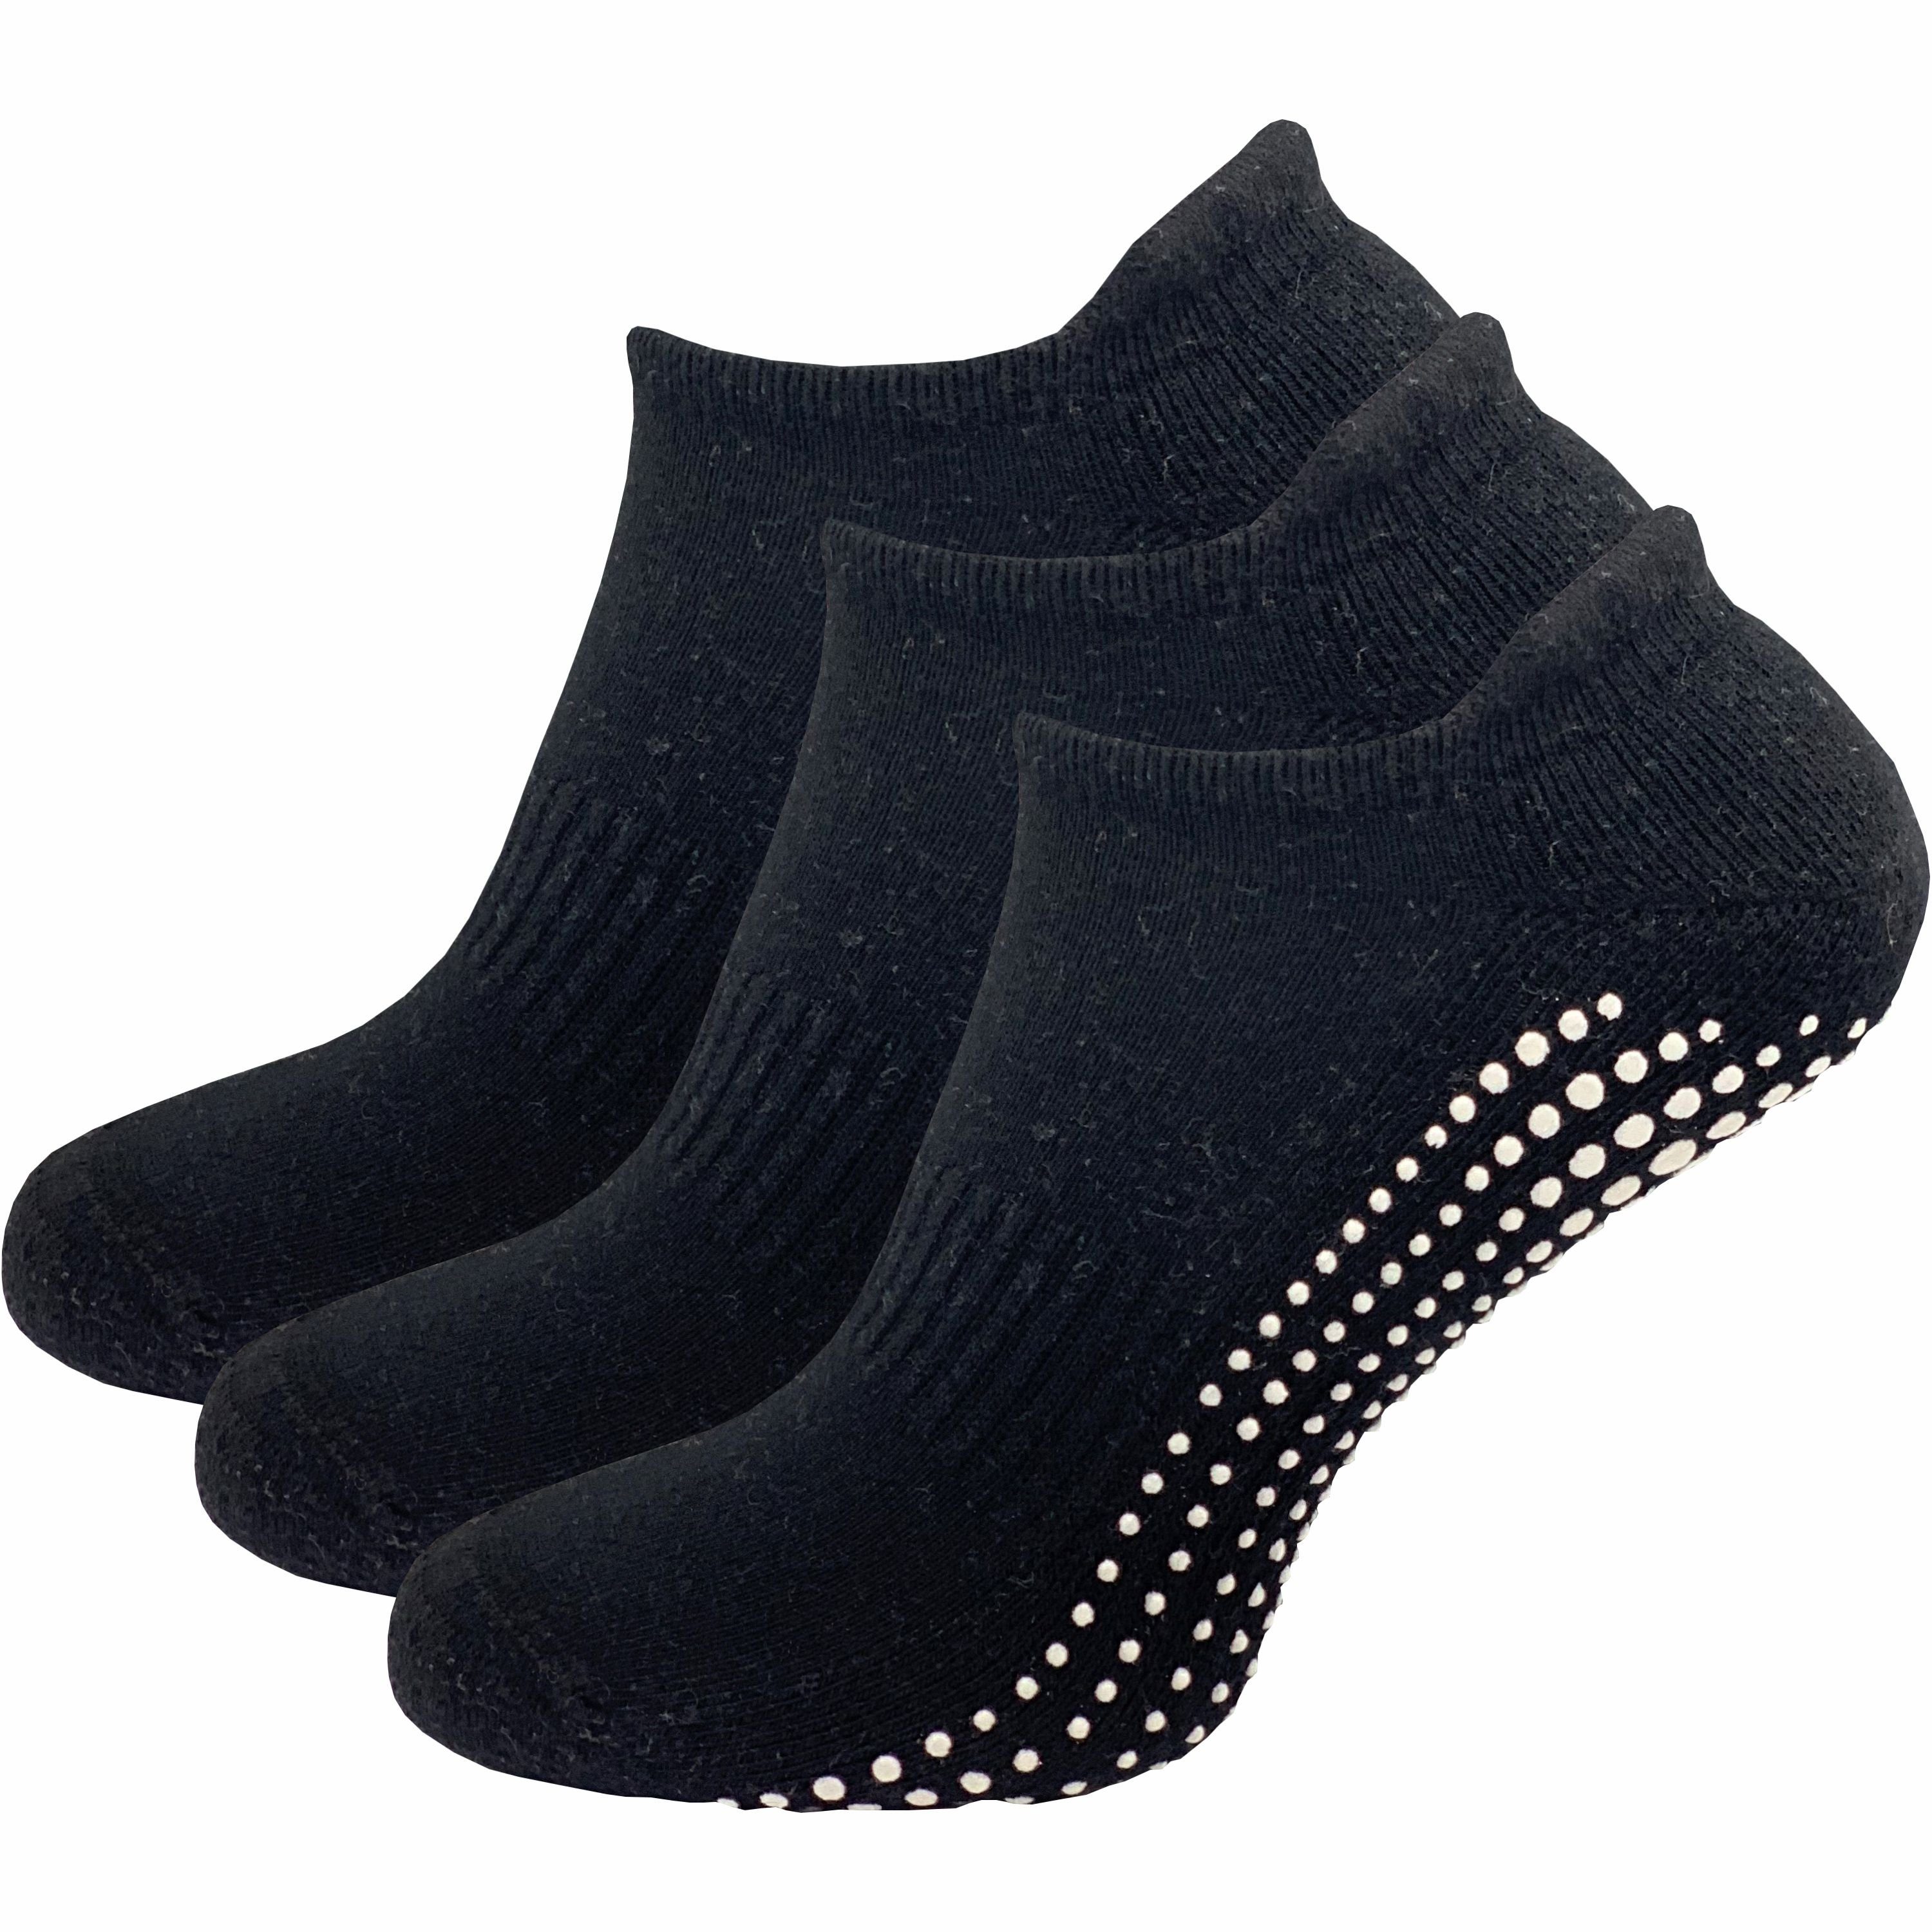 GAWILO ABS-Socken für Damen - Yoga & Pilates Socken - sicherer Halt auf glatten Böden (3 Paar) - rutschfest - mit hohem Baumwollanteil schwarz